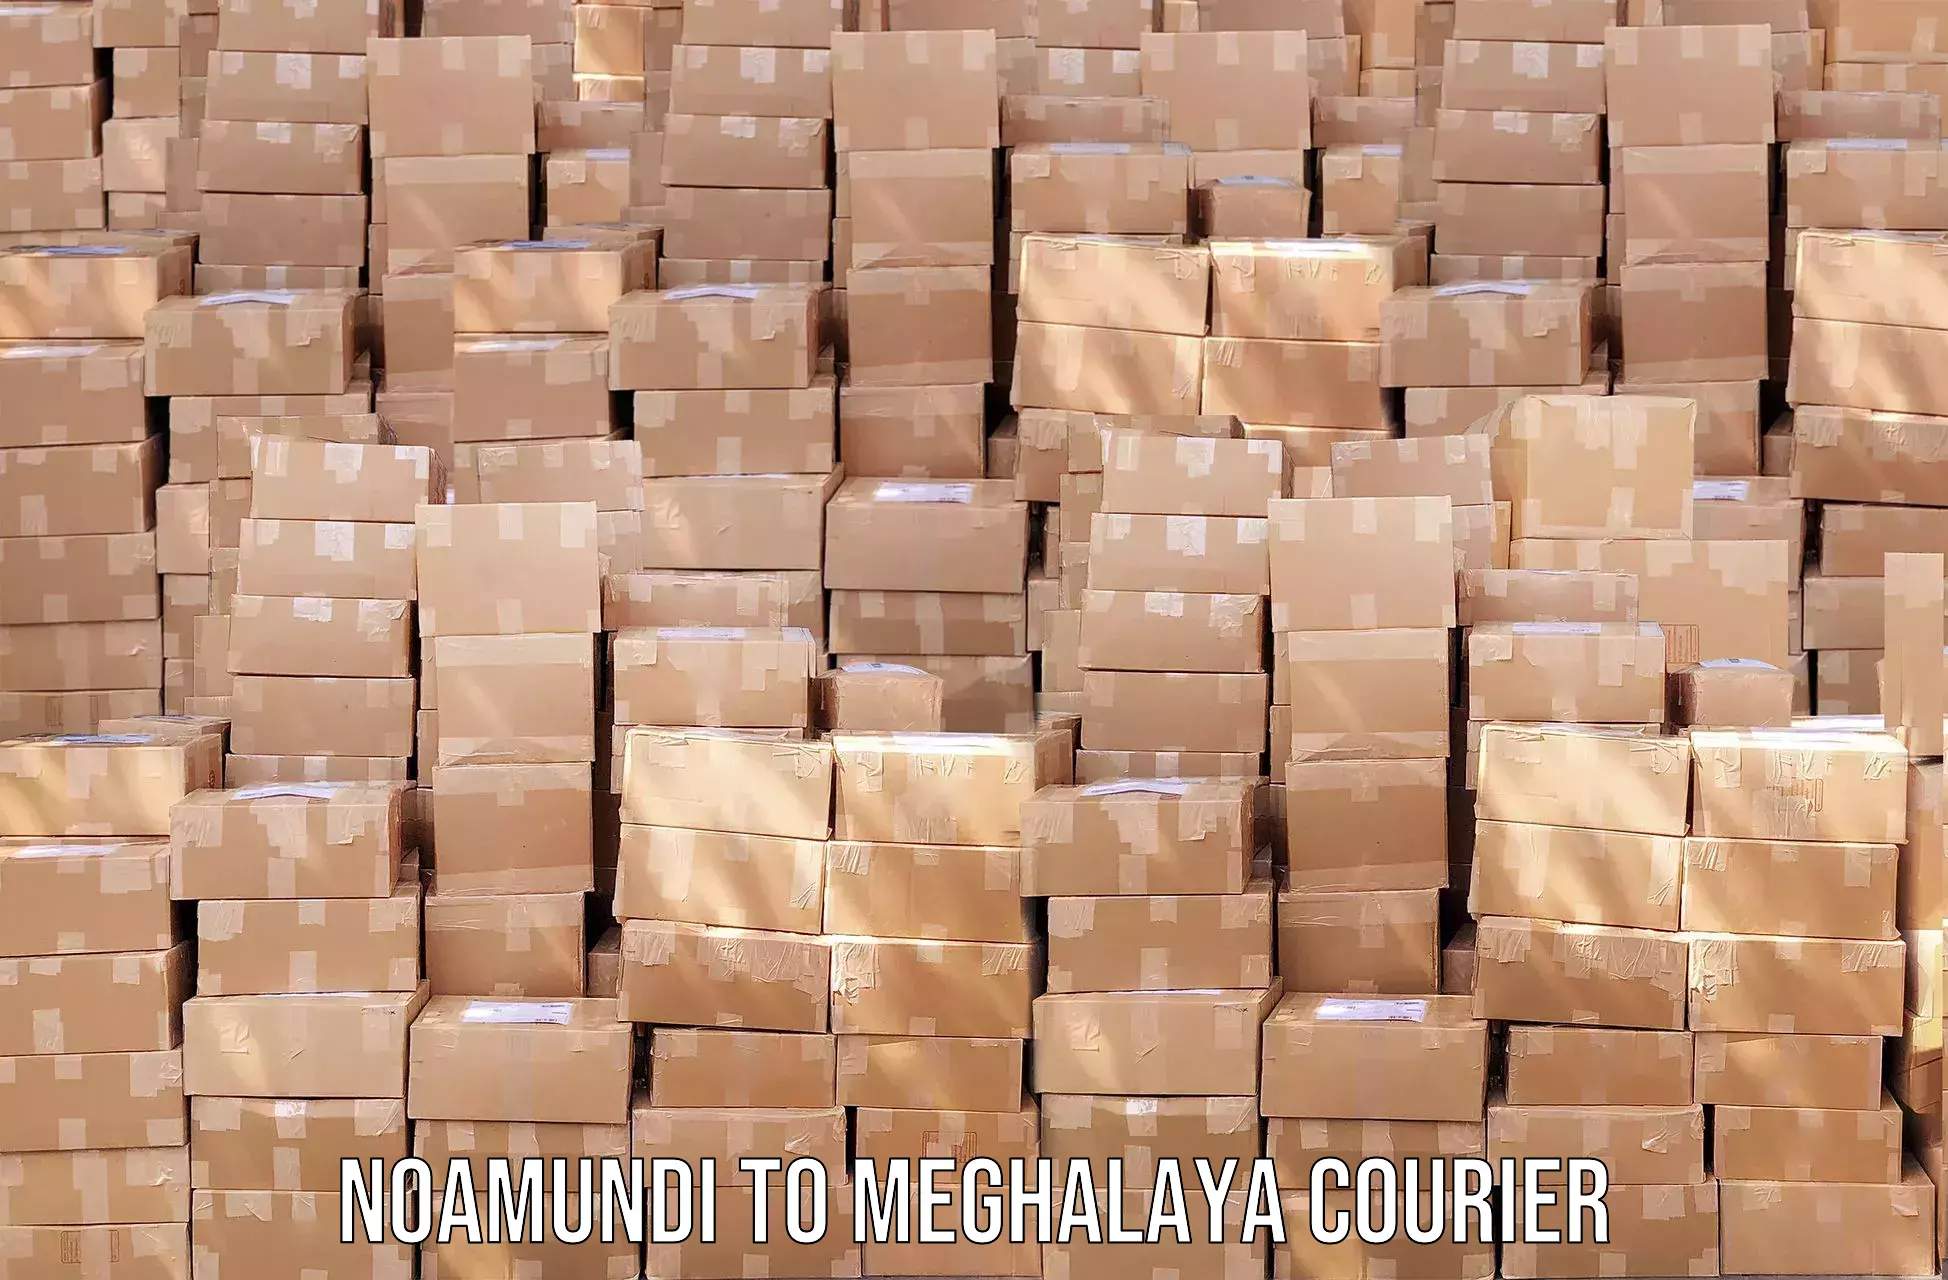 Advanced shipping services Noamundi to Meghalaya